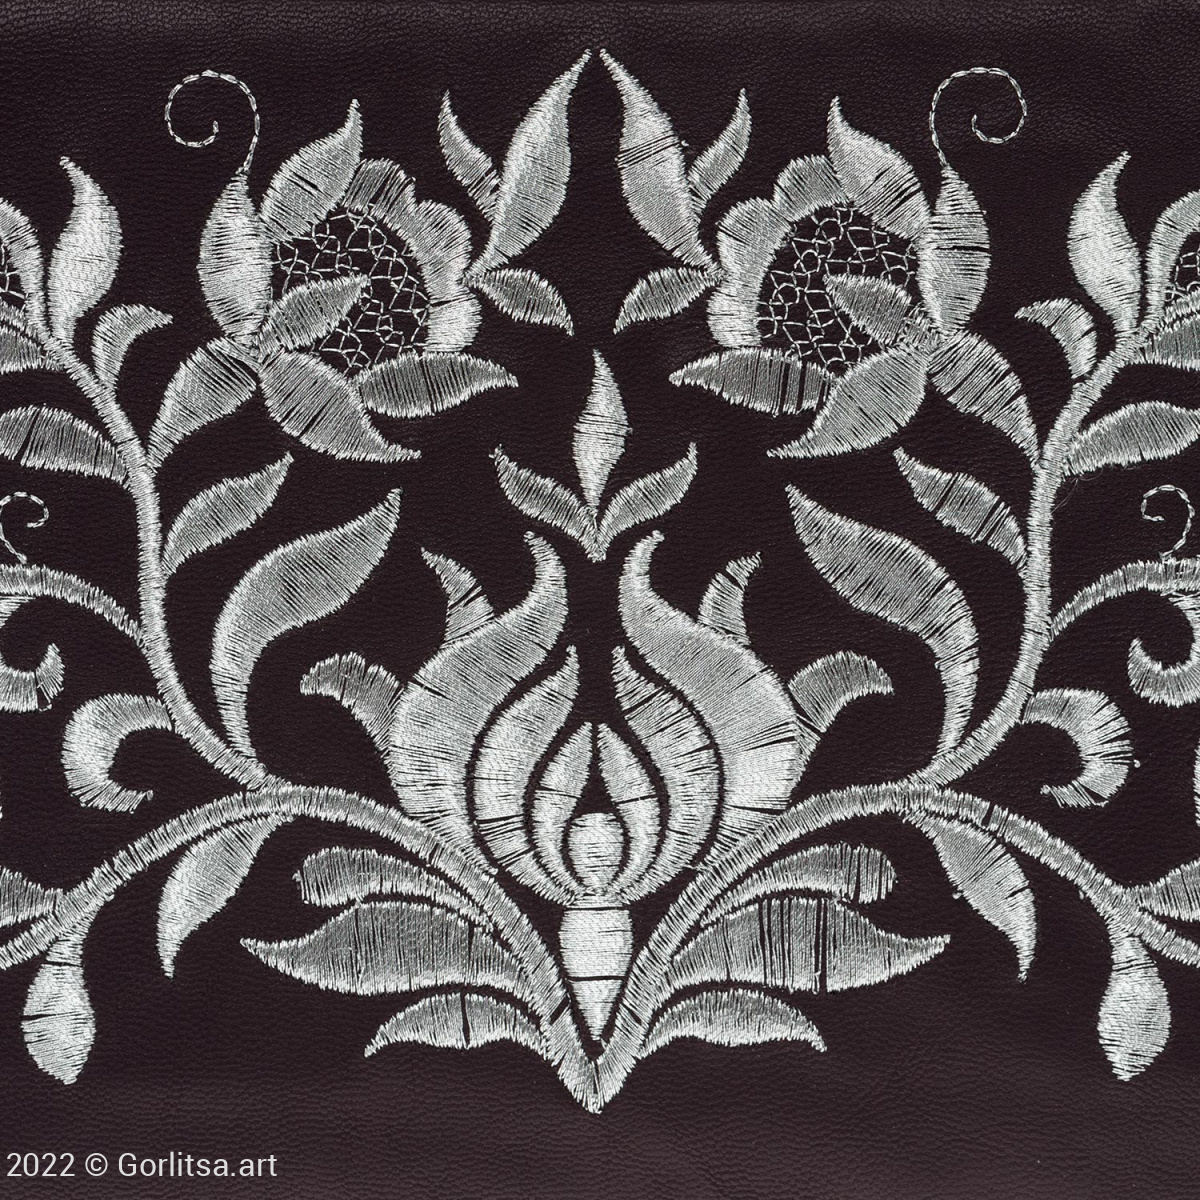 Косметичка «Элегия» м.1913, 62030-3, фиолетовый/серебро, экокожа экокожа Никифоровская мануфактура фото 5